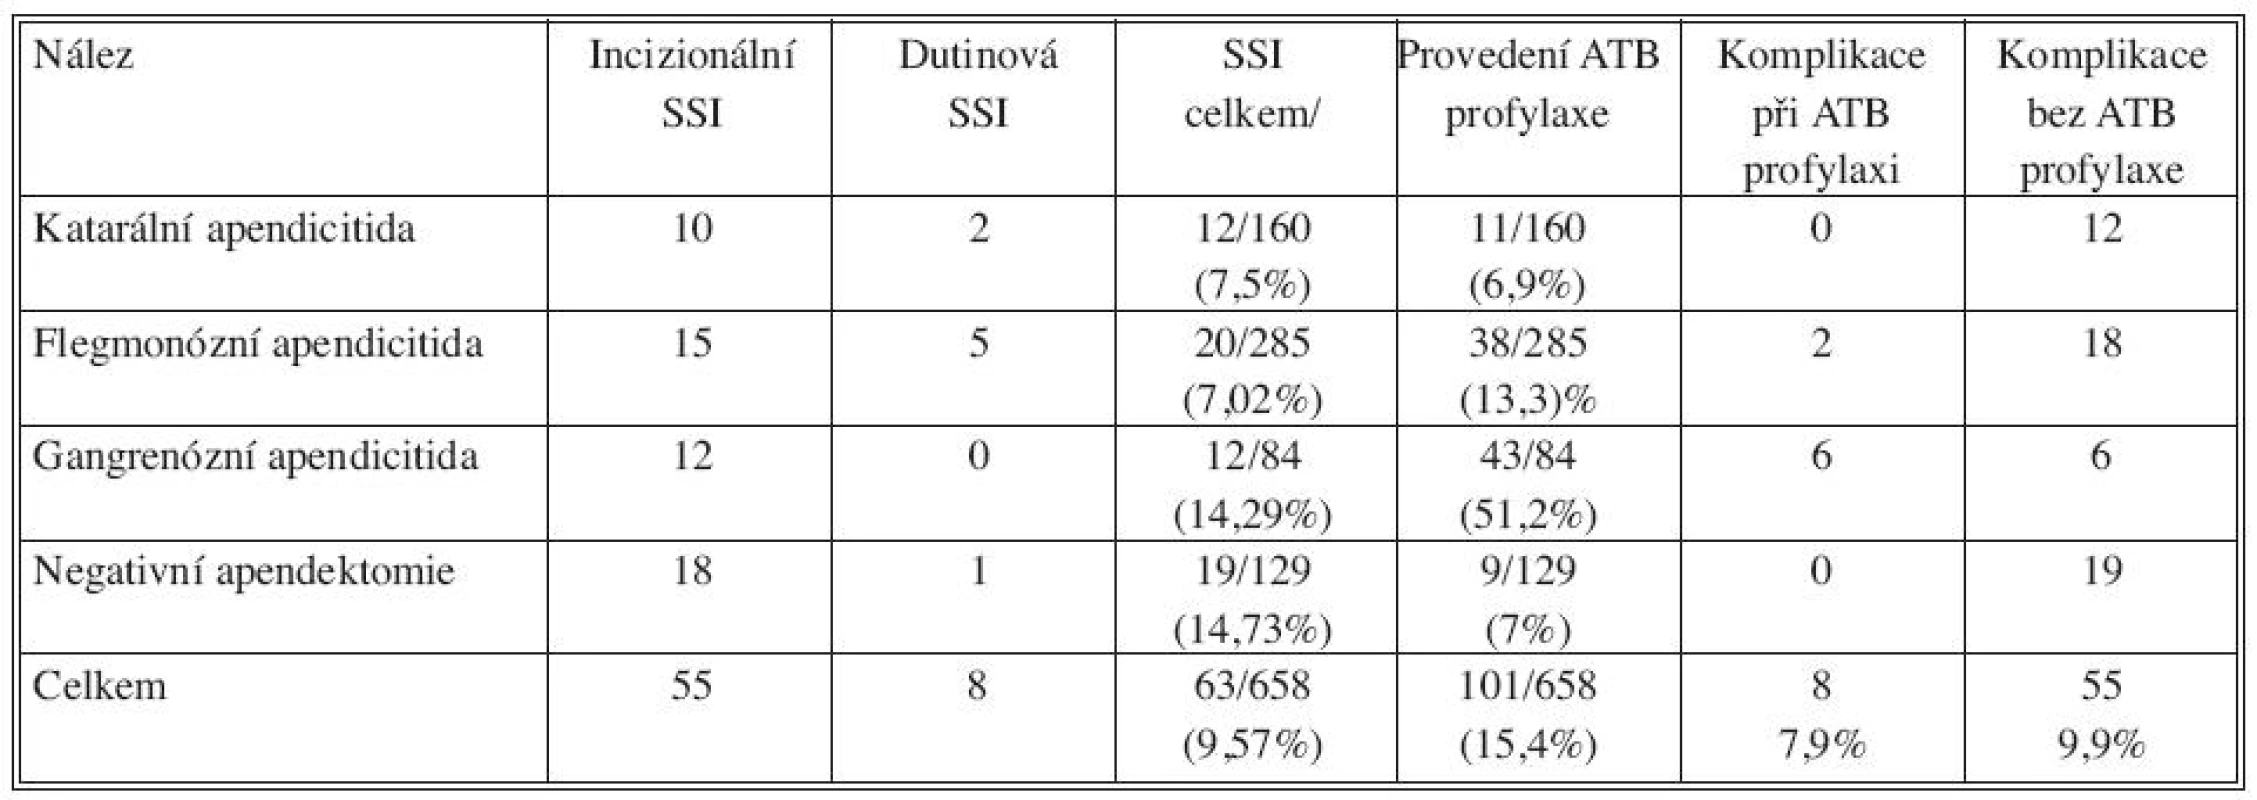 Výskyt infekčních komplikací (SSI) u jednotlivých typů apendicitidy a výskyt komplikací u nemocných s ATB profylaxí a nemocných, u kterých nebyla ATB profylakticky podána. Nemocní, u kterých vznikl pooperační ileus (N=7) byli z analýzy vyřazeni
Tab. 5. Rates of infectious complications (SSI) in the individual types of appendicitis and complication rates in patients with ATB prophylaxis and in patients, who received no ATB prophylaxis. Patients, who developed postoperative ileus (N = 7) were excluded from the analysis